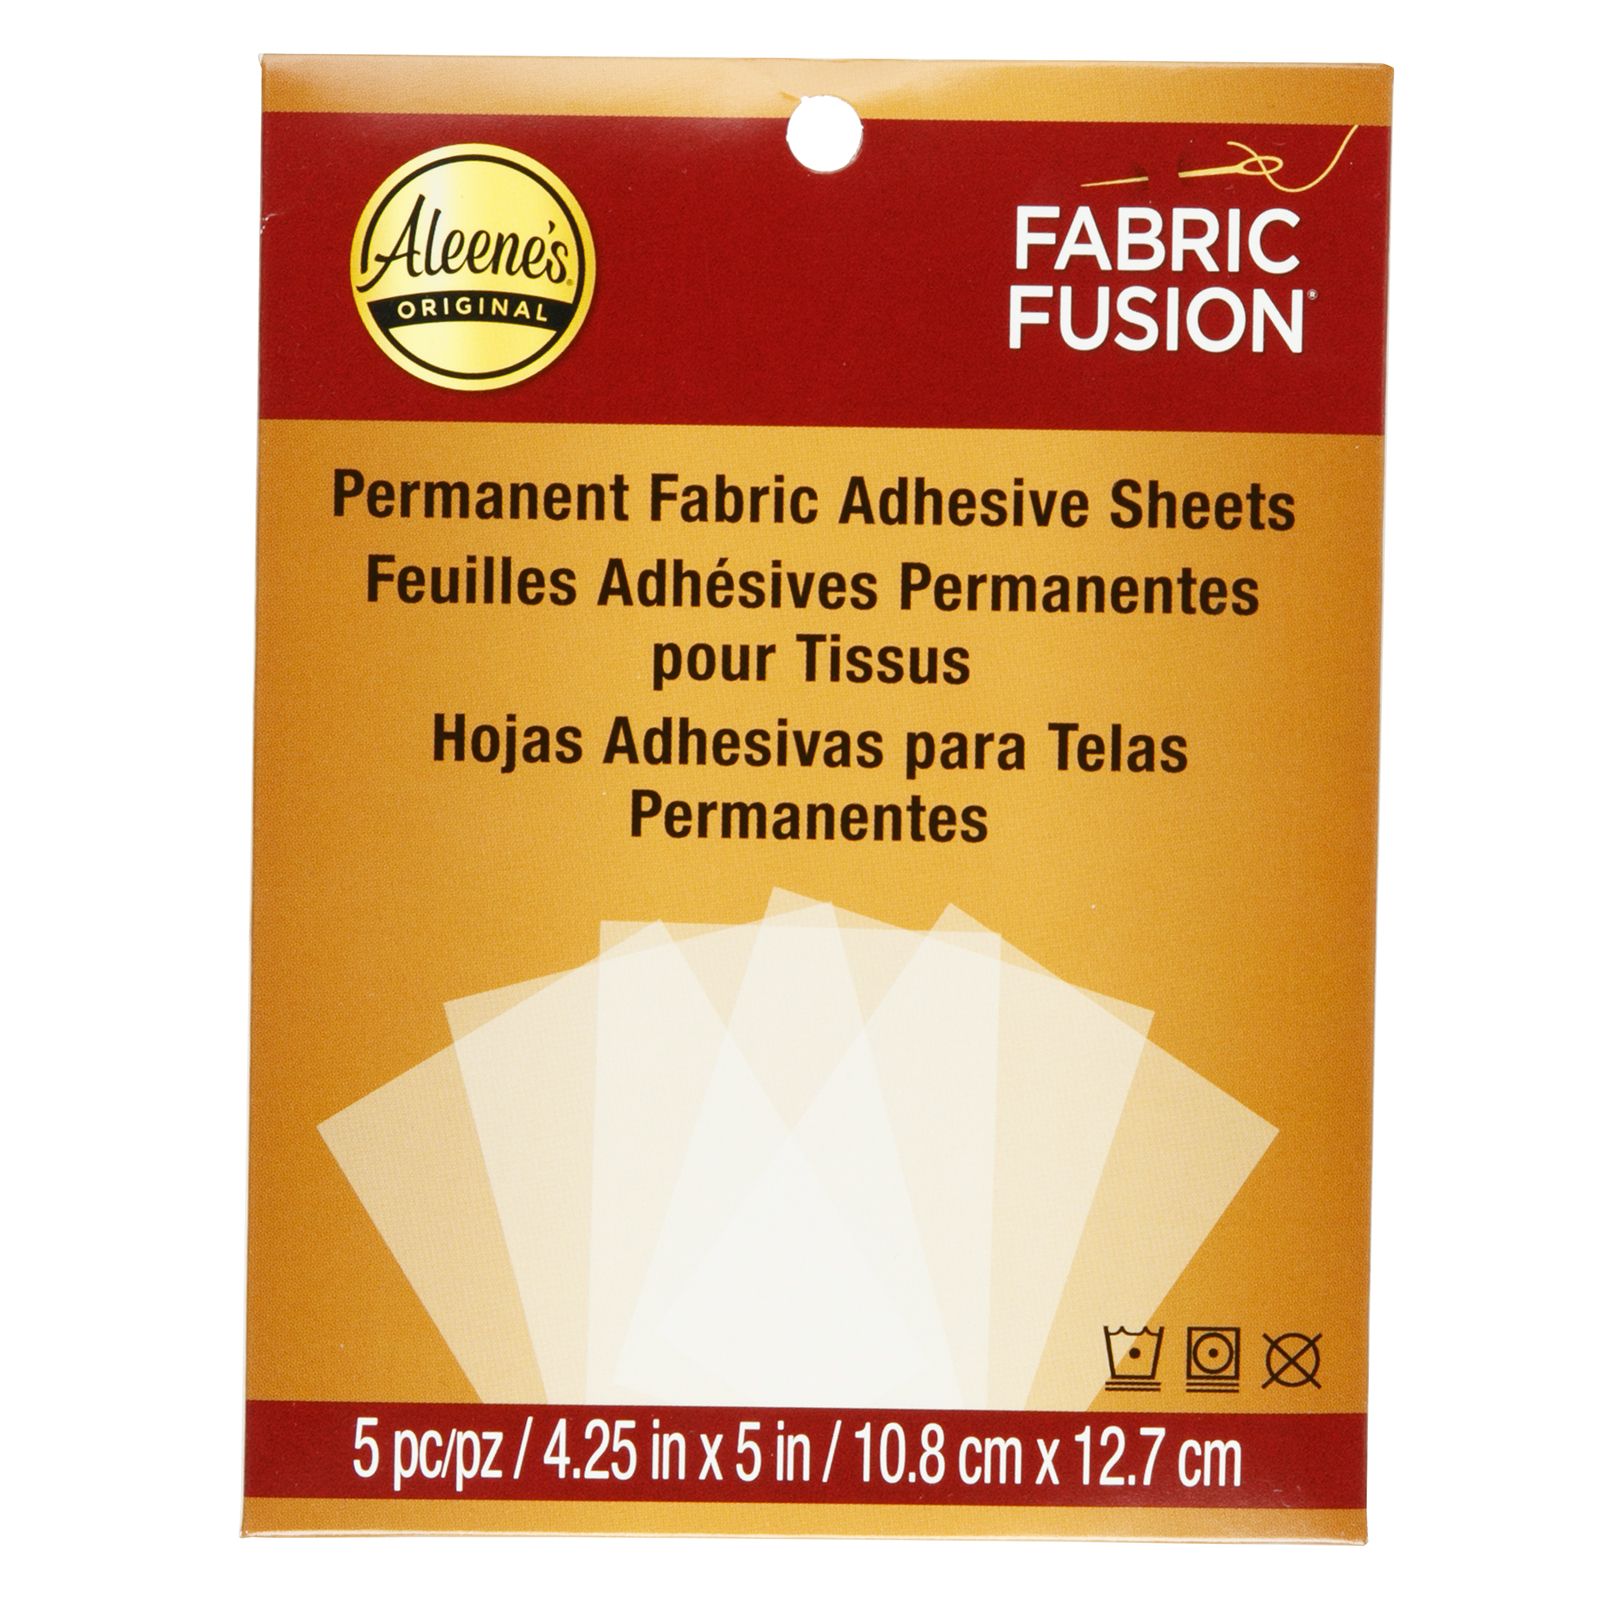 Aleene's • Fabric Fusion Hojas adhesivas para telas permanentes